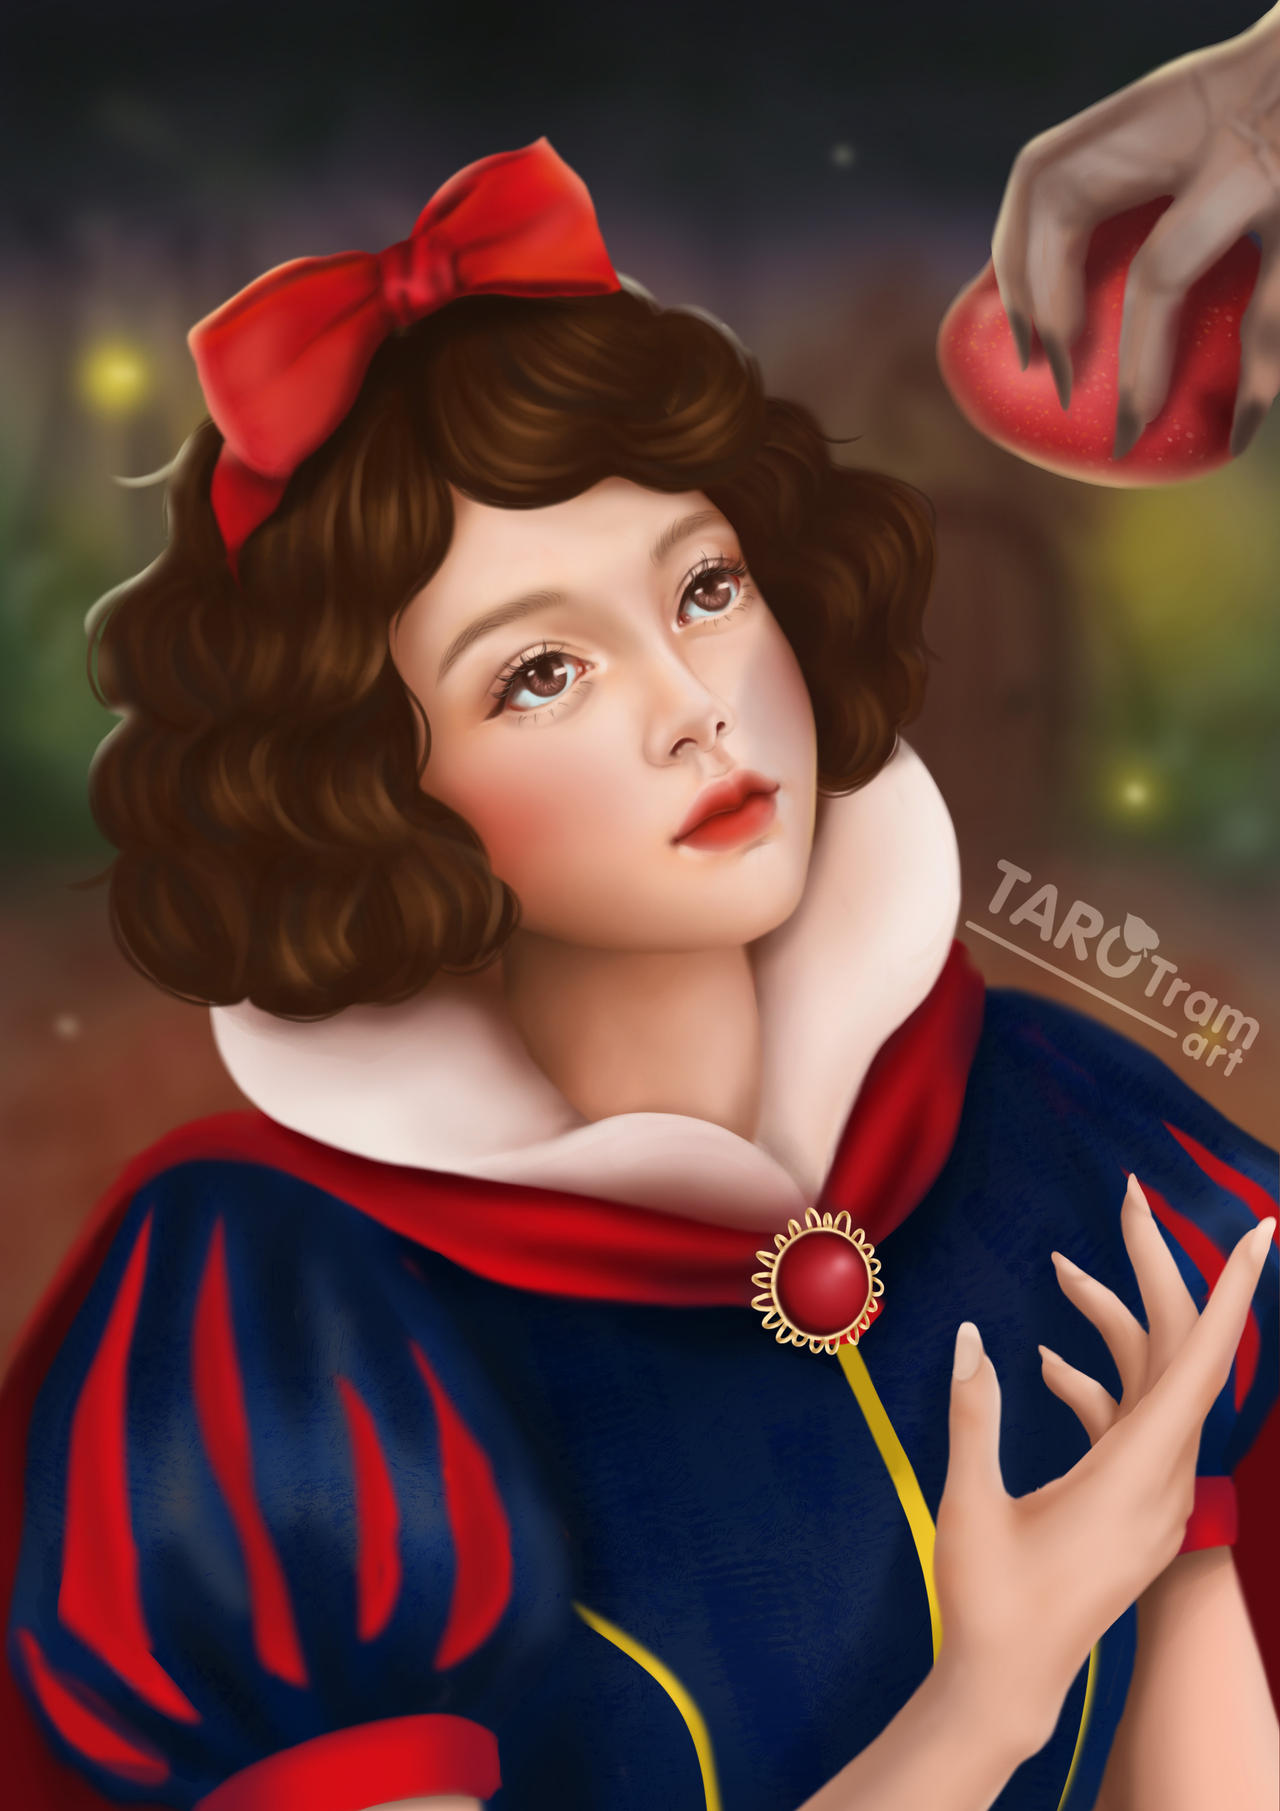 Фото Snow White / Белоснежка смотрит на руку ведьмы с красным яблоком из мультфильма Snow White and the Seven Dwarfs / Белоснежка и семь гномов, by TaroTram